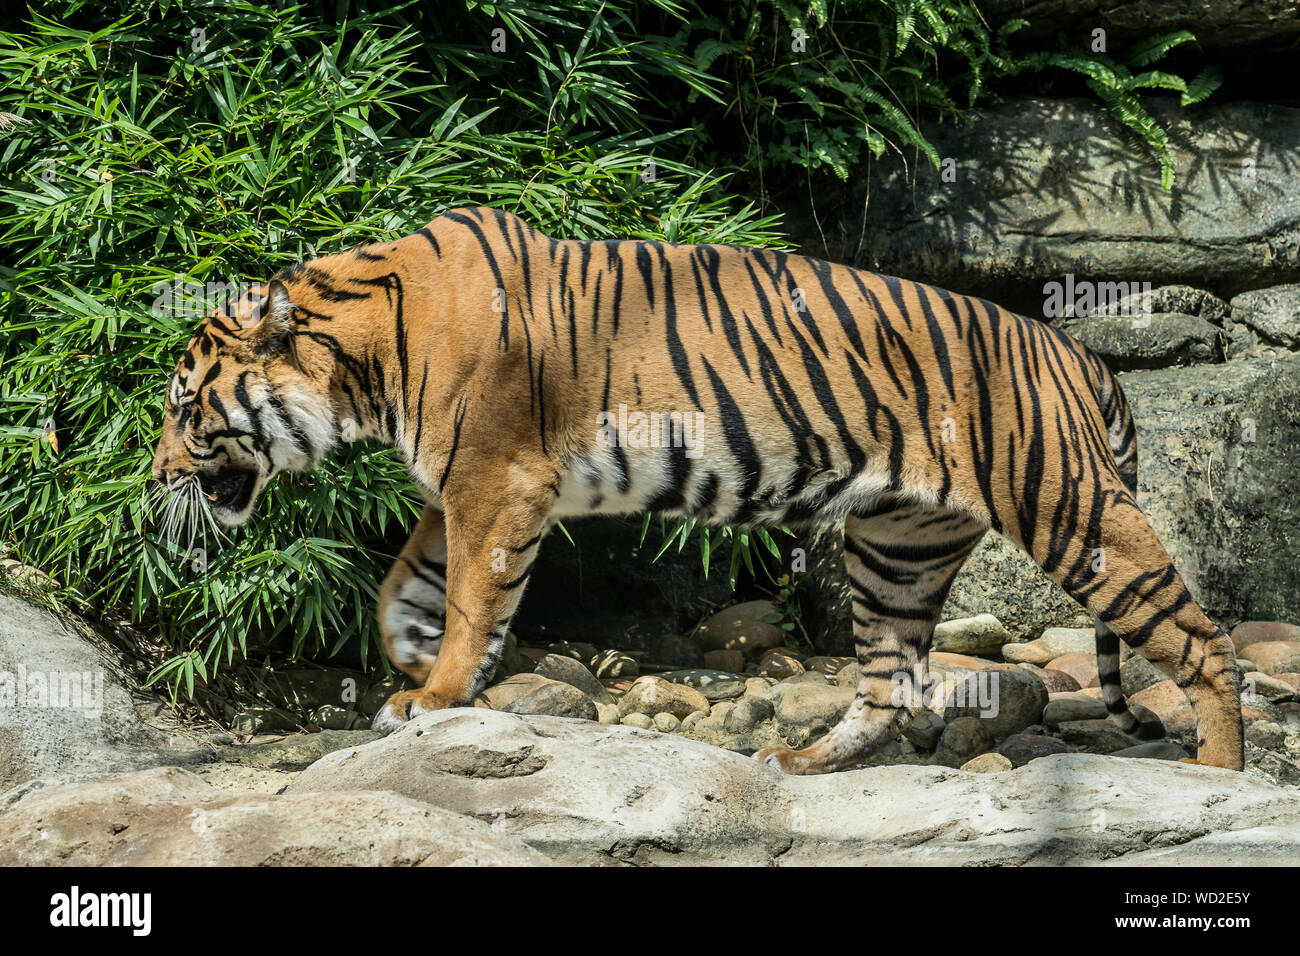 Walking panthera tigris tigris, yellow big tiger or bengal tiger Stock Photo